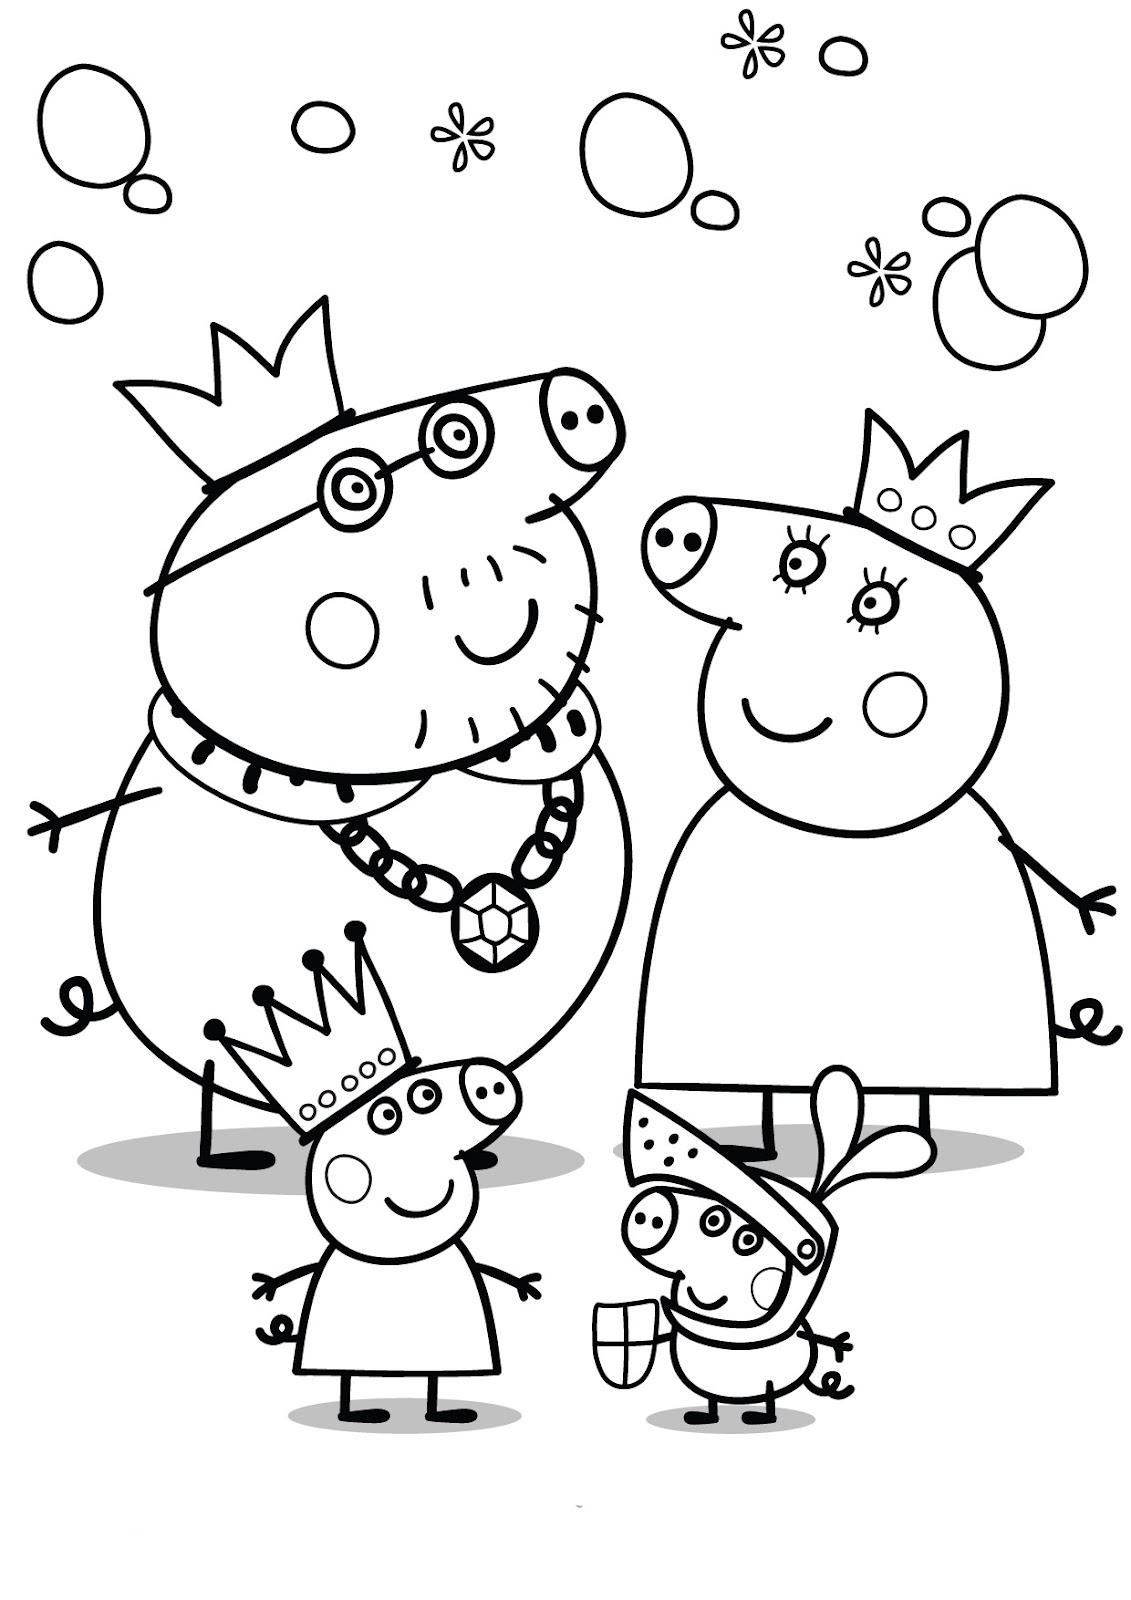 desenho-peppa-pig-3_ original Desenhos do Peppa Pig para colorir